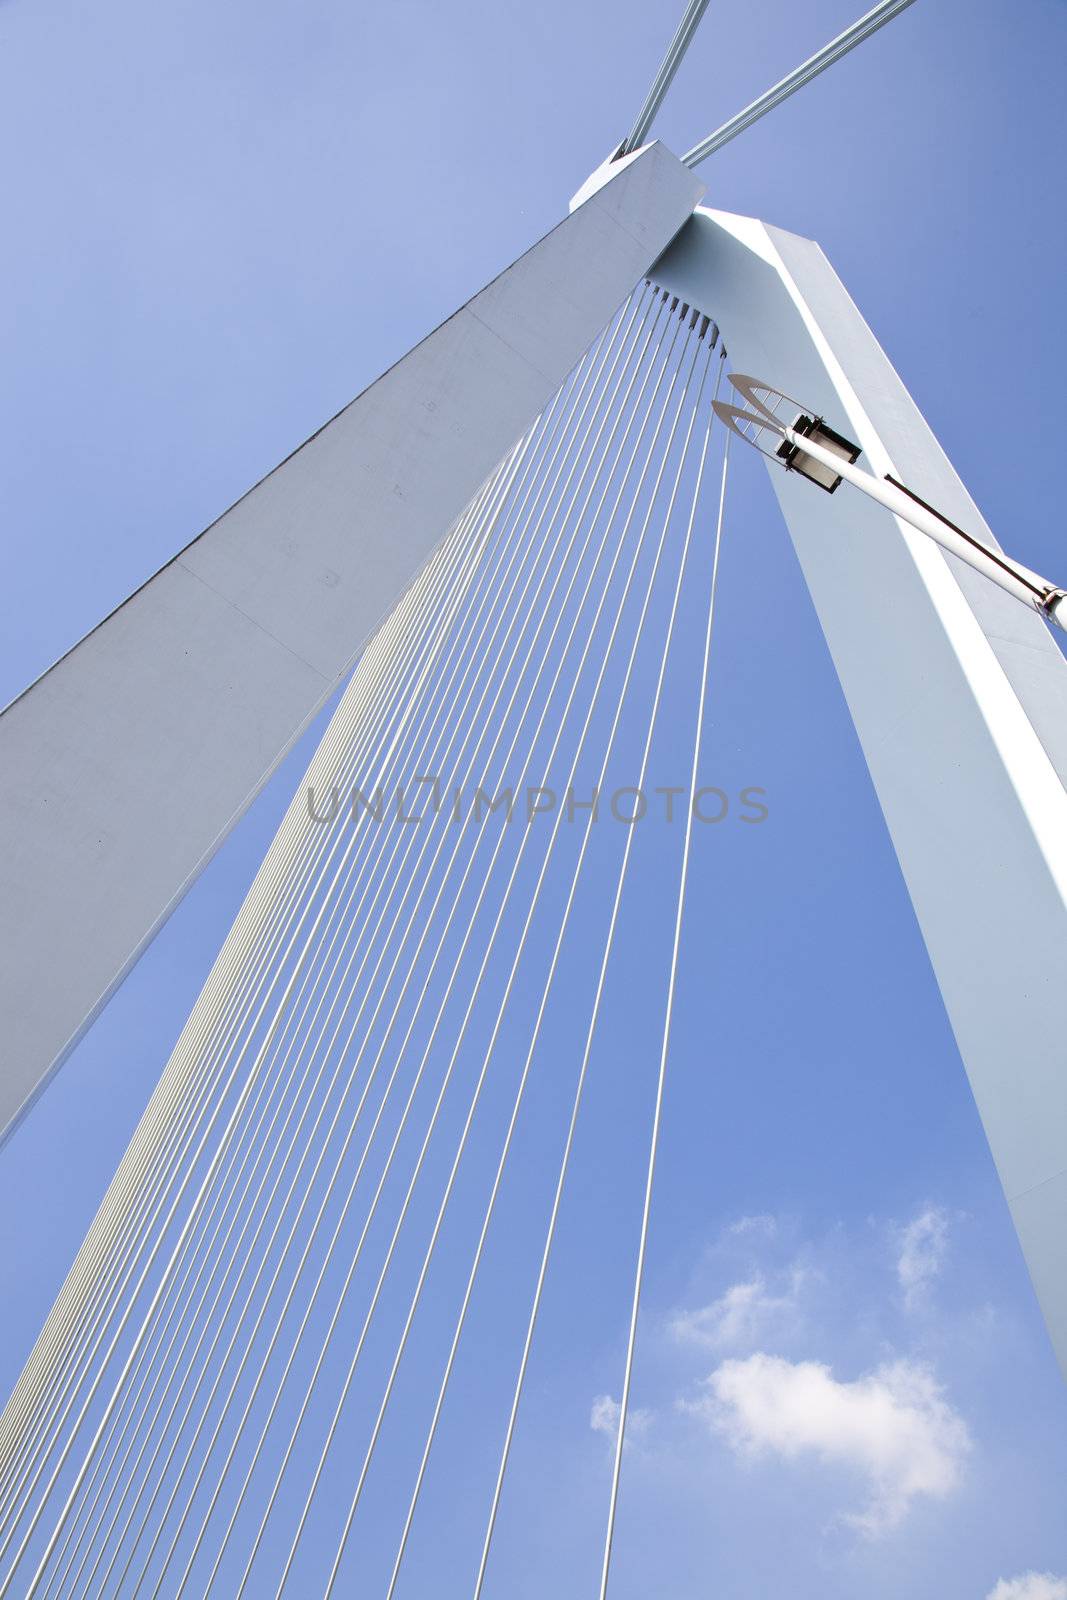 Detail of Erasmus bridge in Rotterdam, The Netherlands